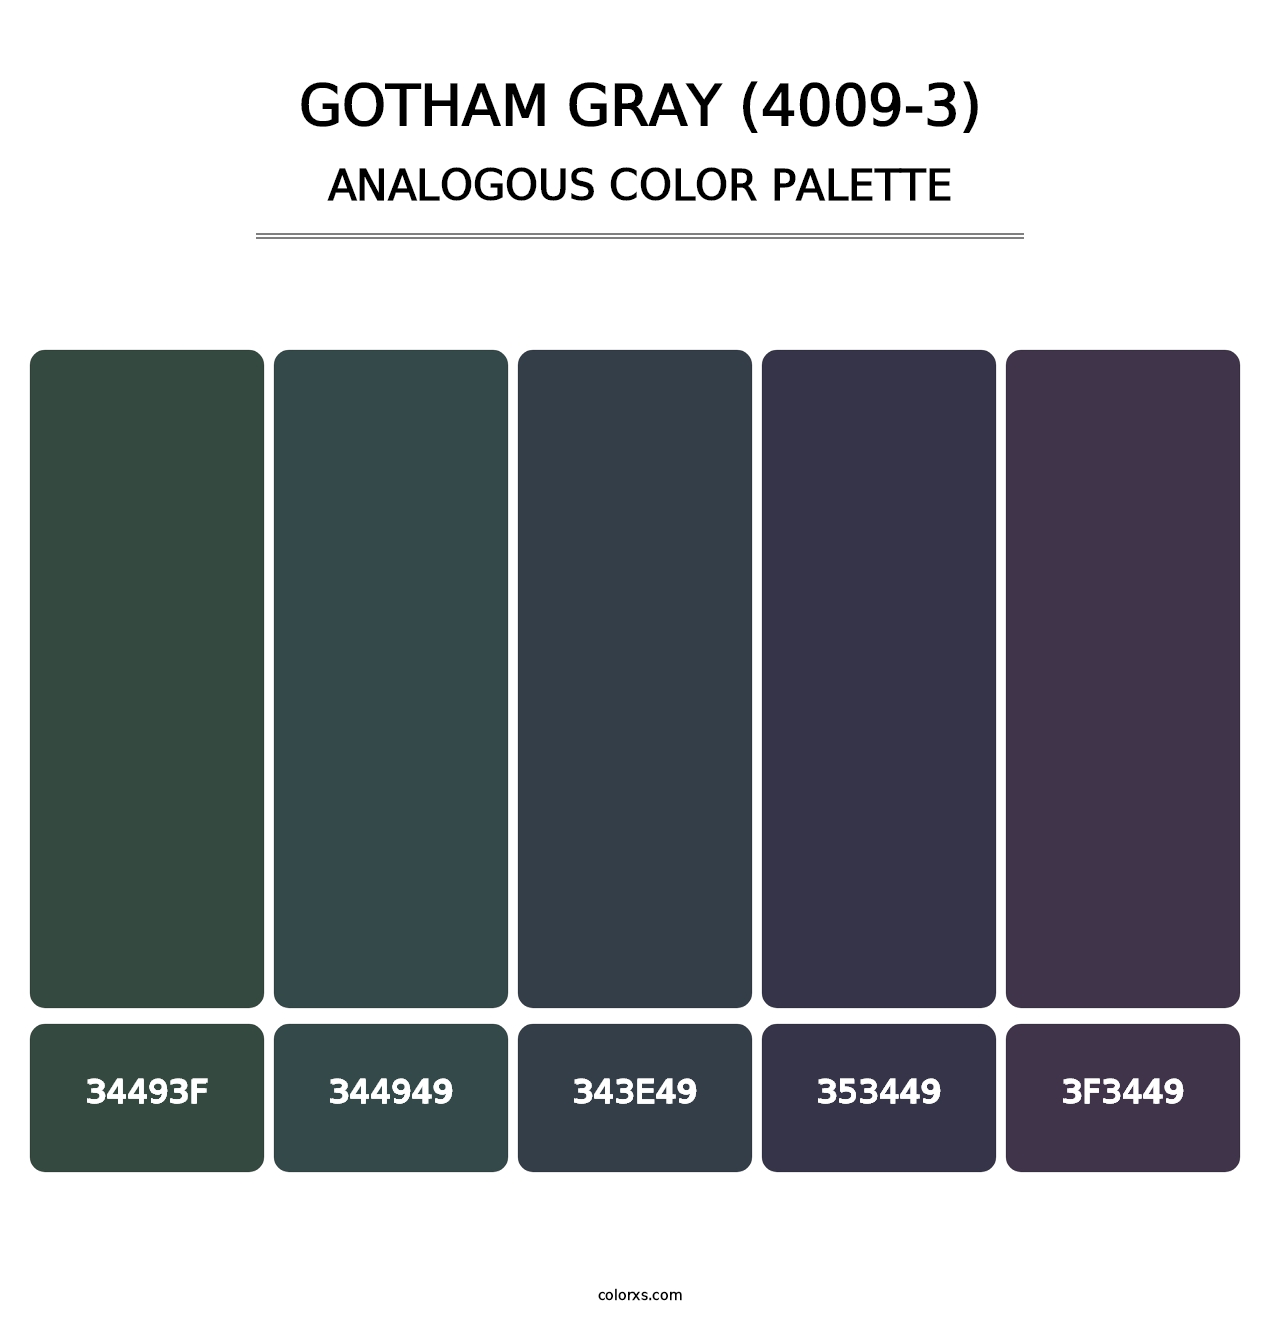 Gotham Gray (4009-3) - Analogous Color Palette